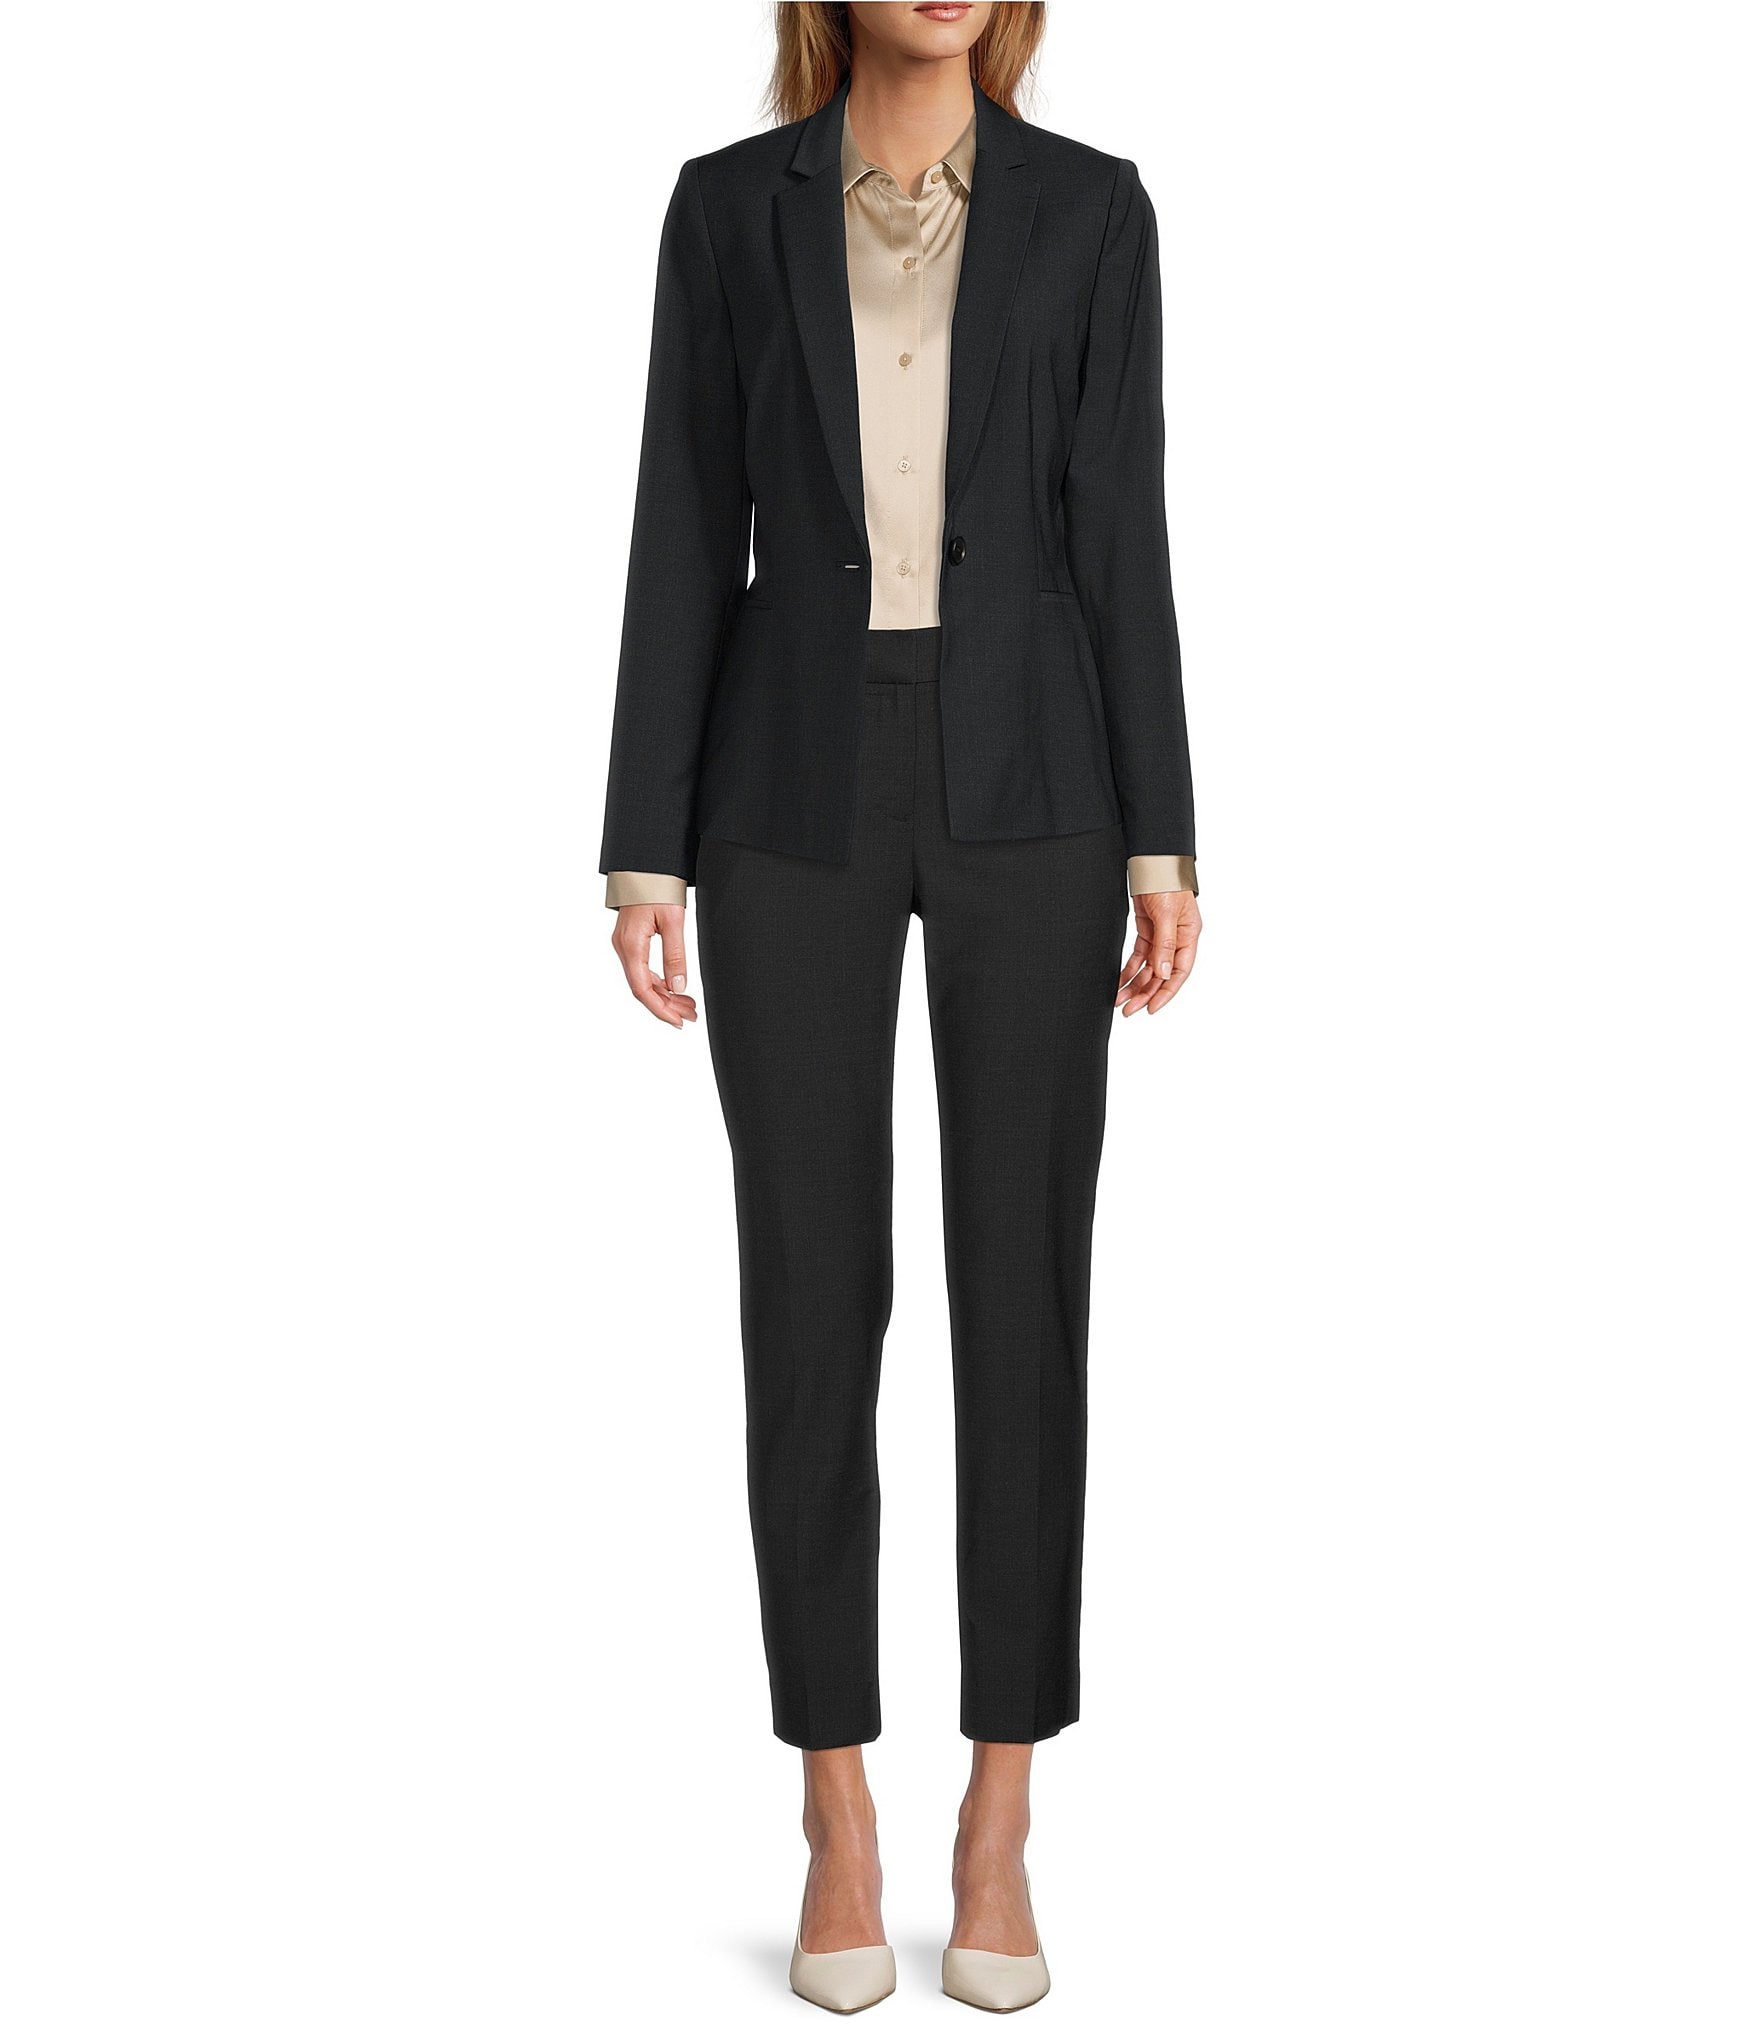 black pant suit: Women's Contemporary Clothing